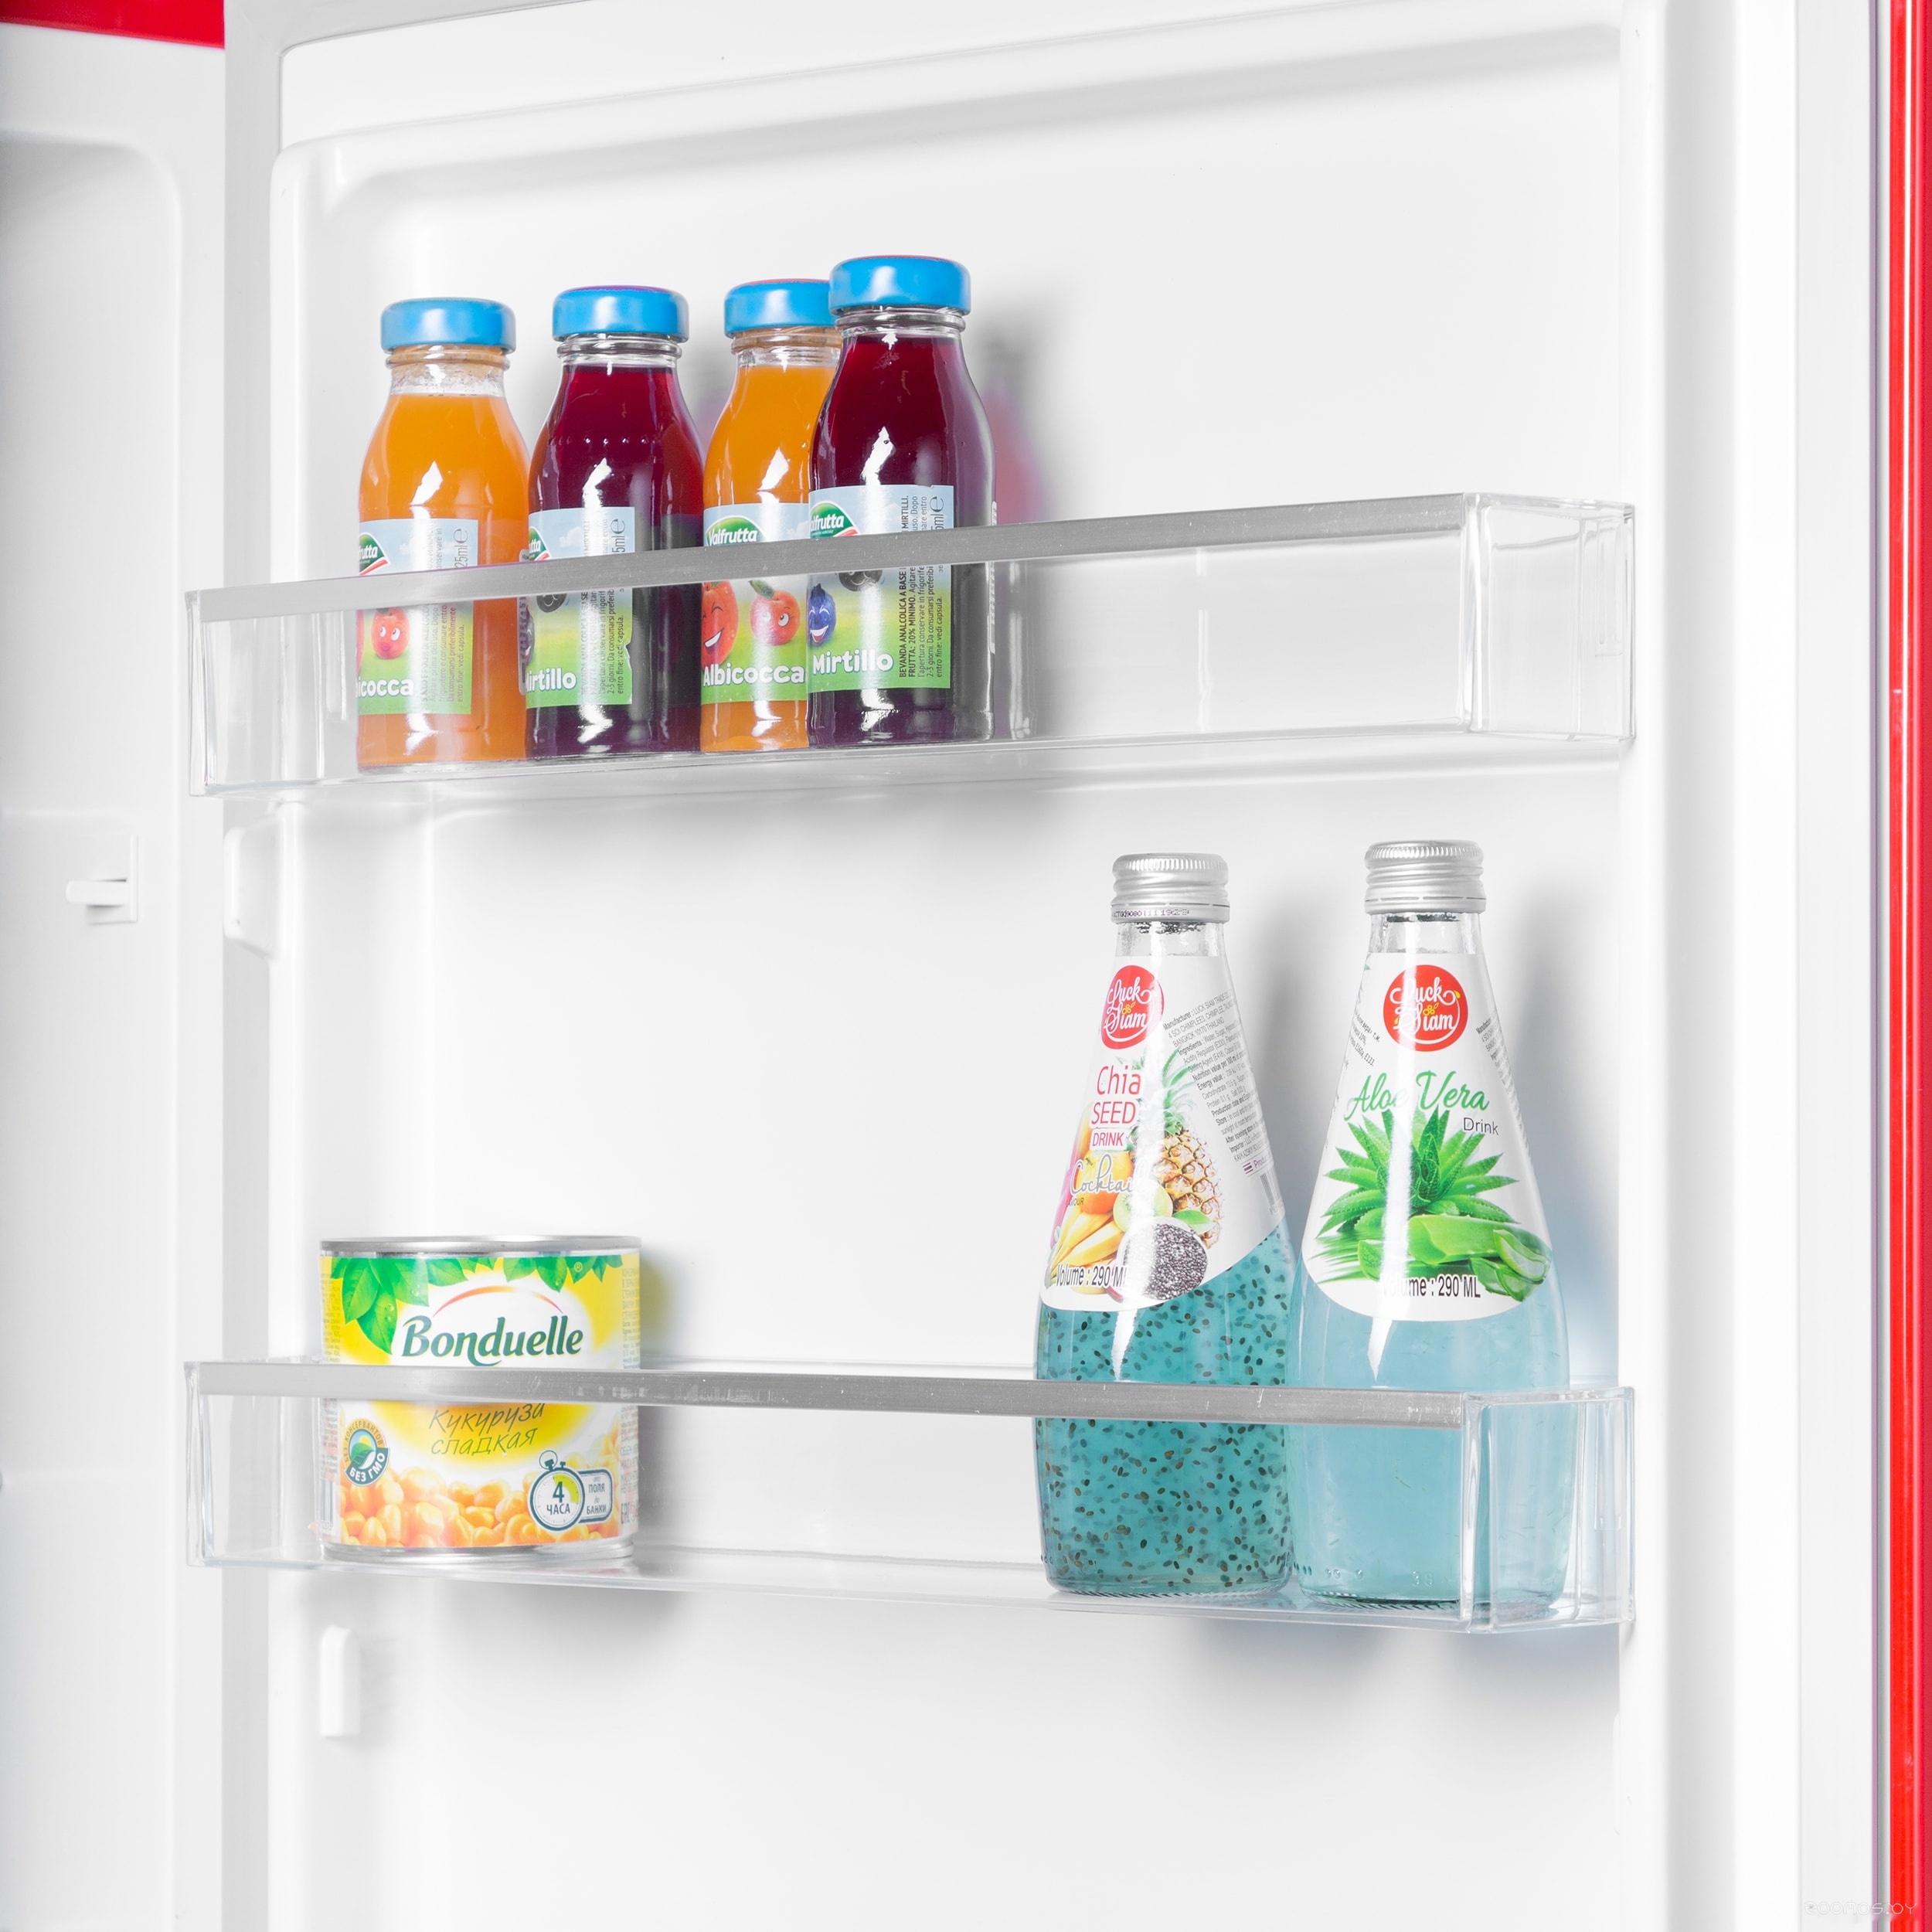 Холодильник Maunfeld MFF186NFRR в  магазине Терабит Могилев